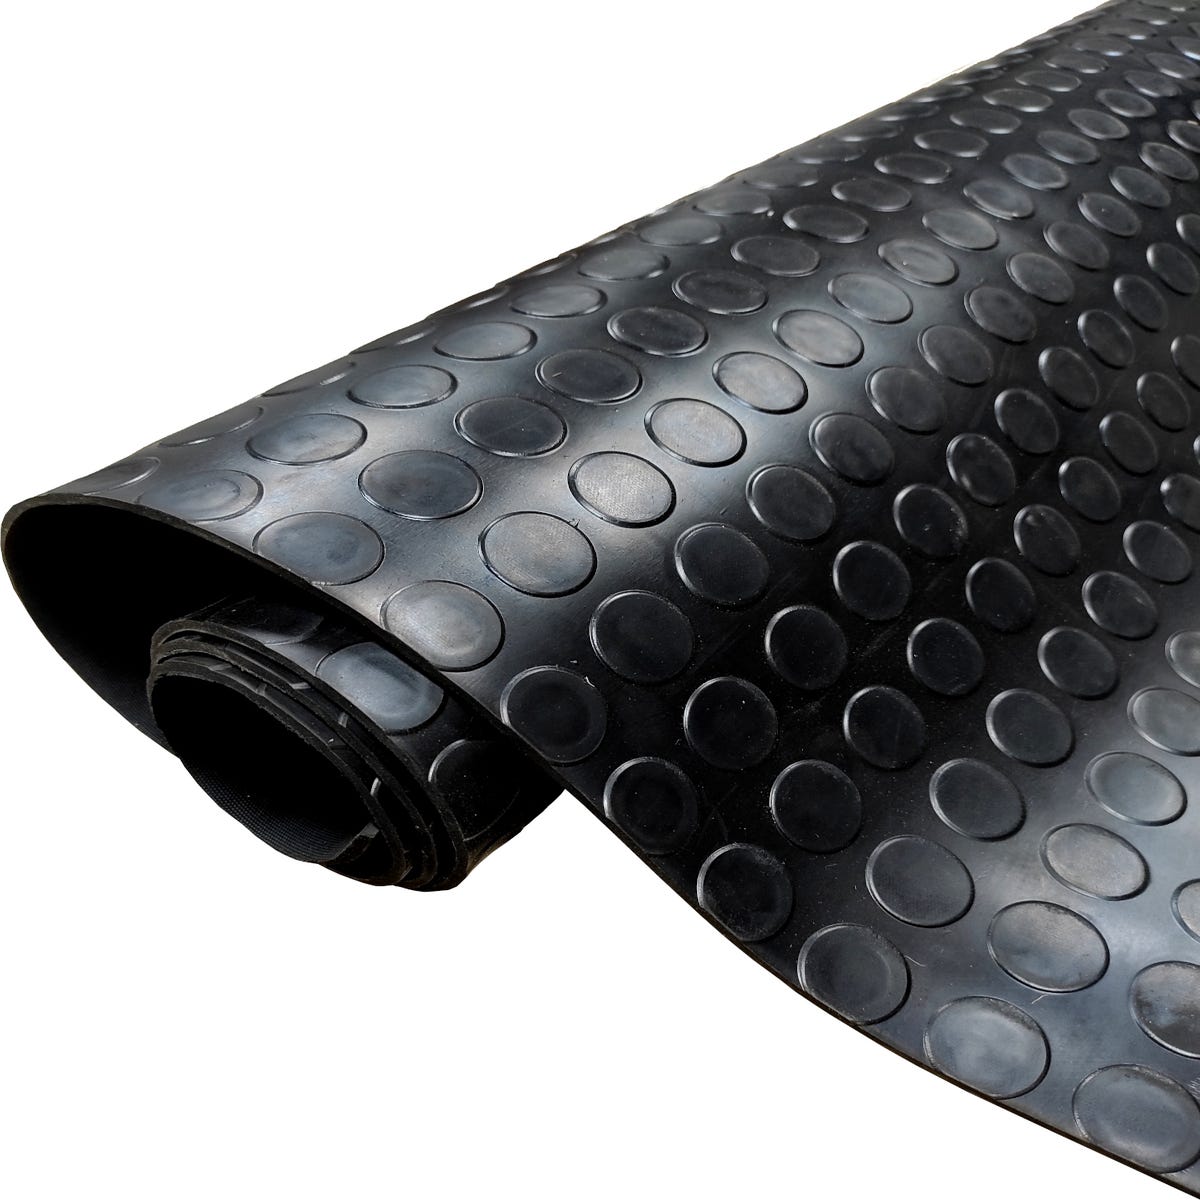 Acomoda Textil – Pavimento de Caucho 1x2,5m Antideslizante, Protector de  Suelo para Interior y Exterior. Rollo de Goma Fácil Instalación.